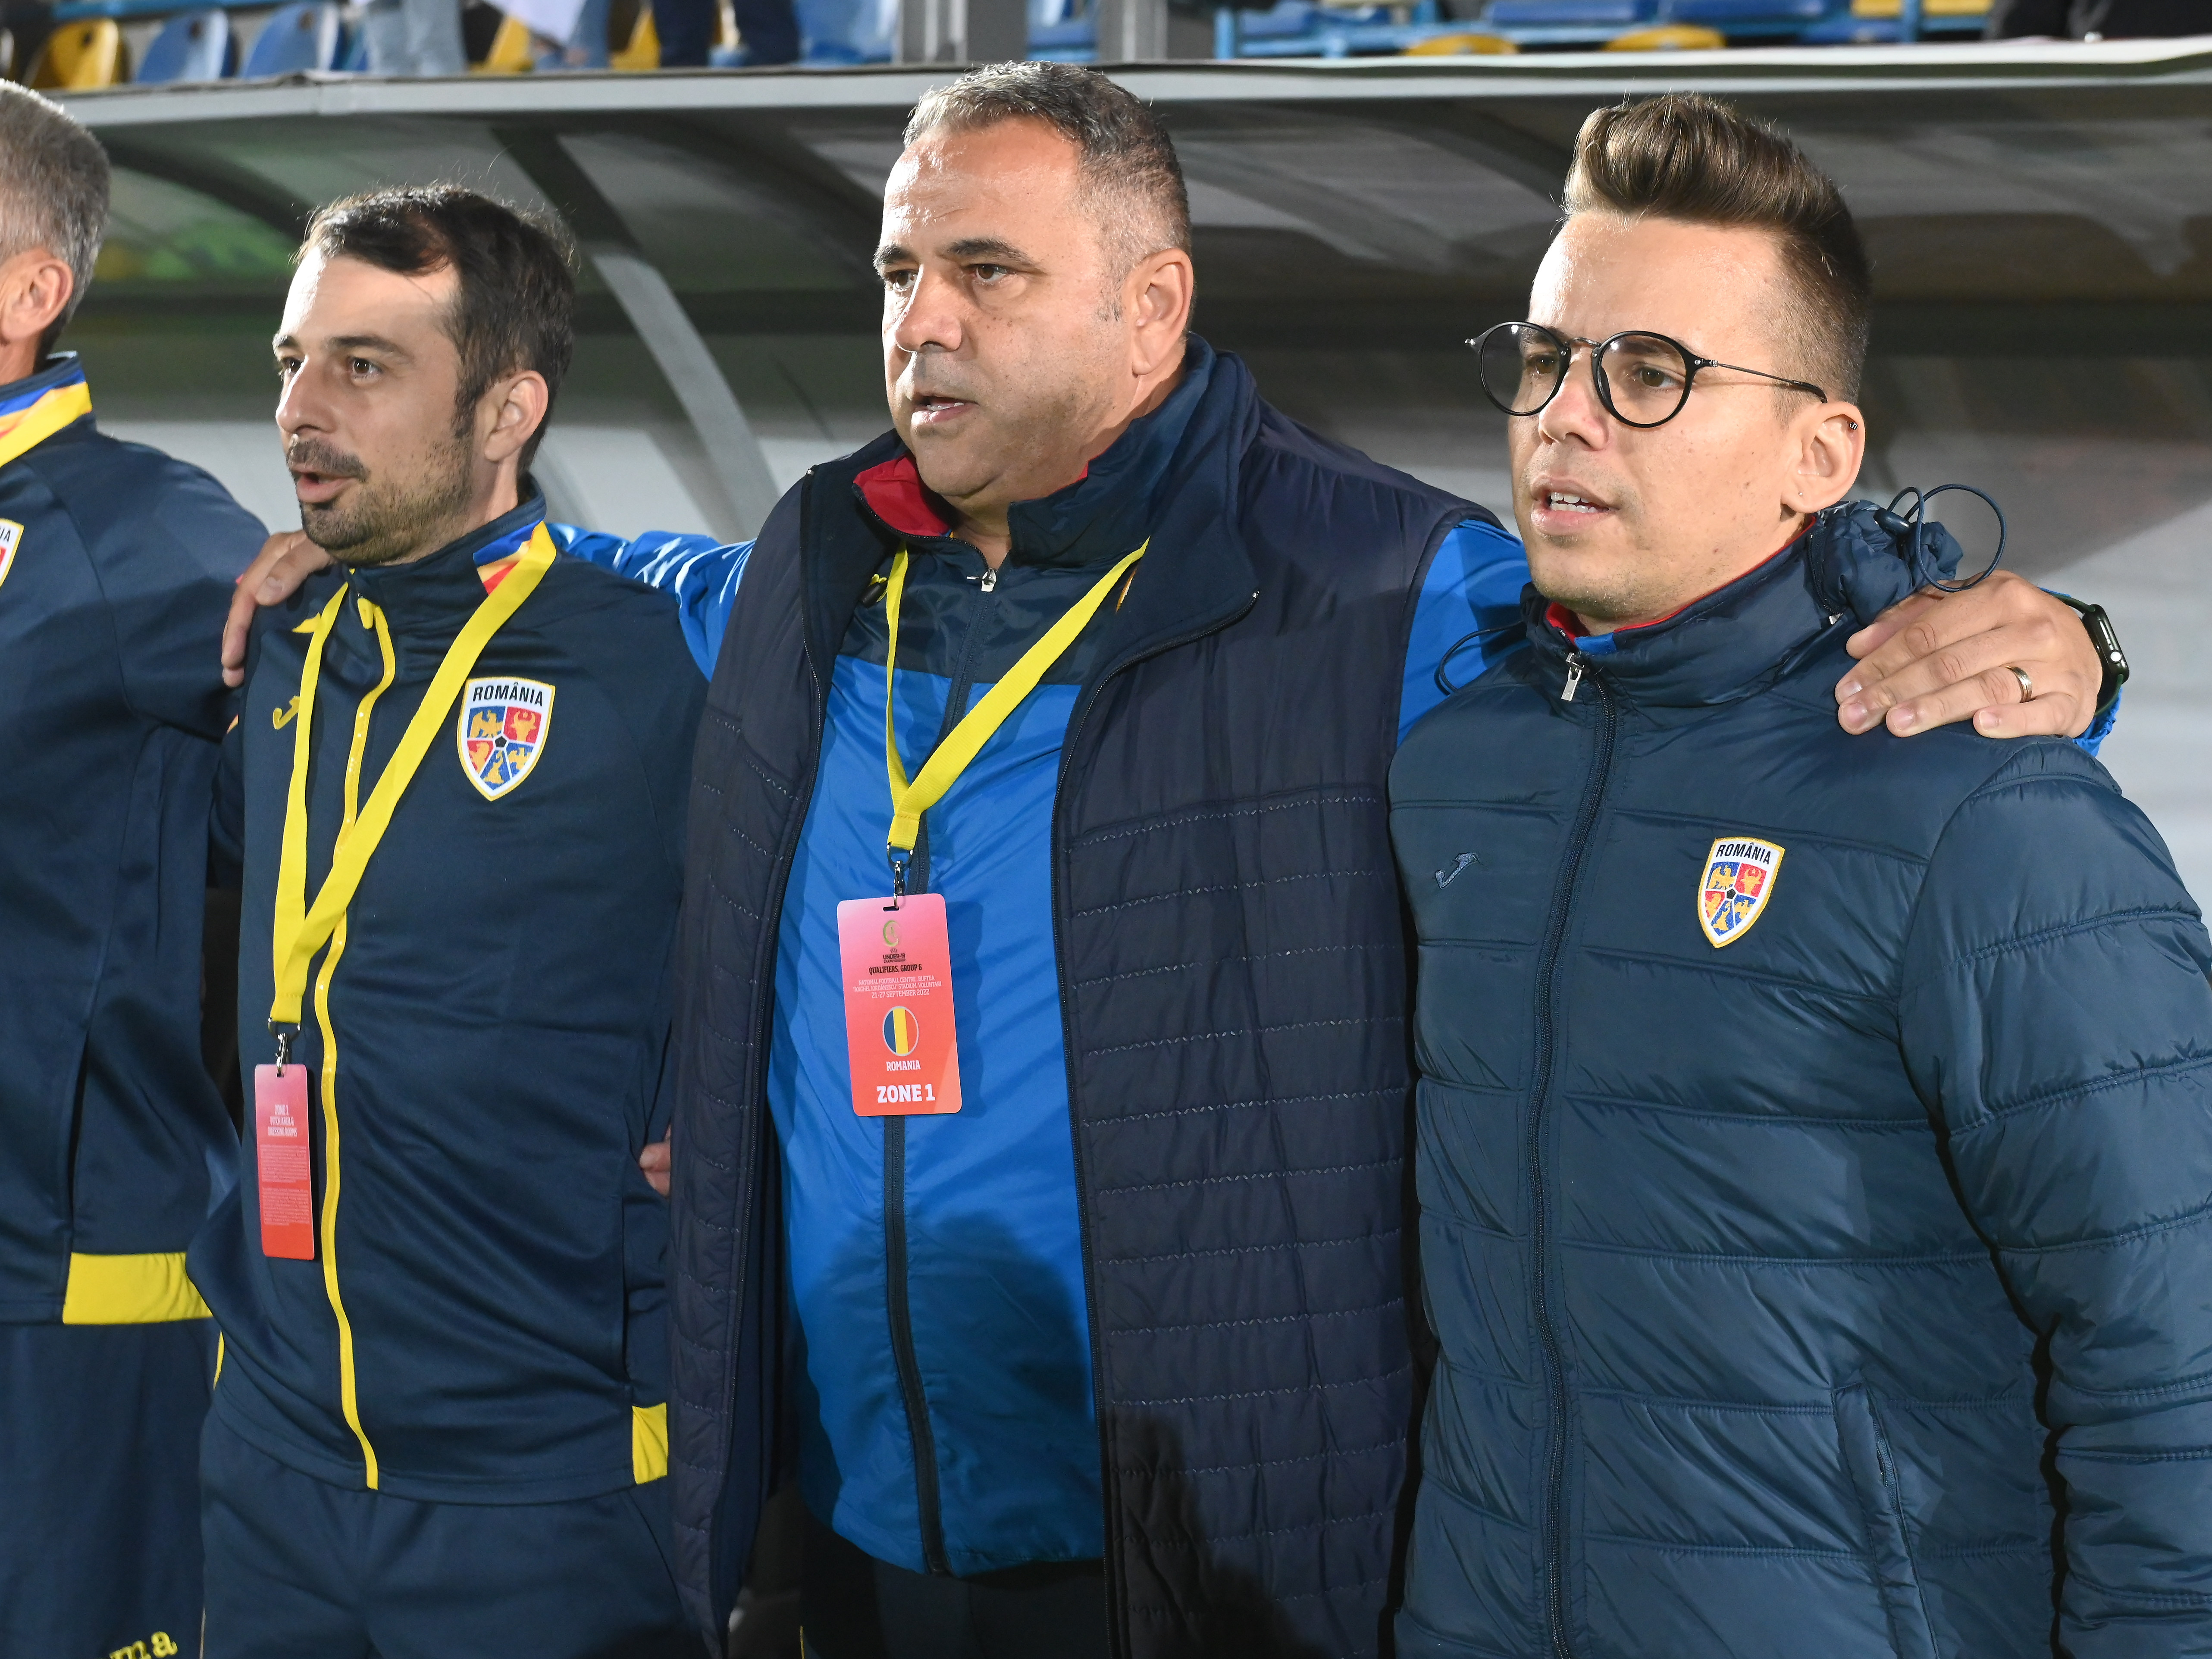 Lotul României U19 pentru meciurile amicale din noiembrie. 3 fotbaliști nu au primit acordul clubului de a participa